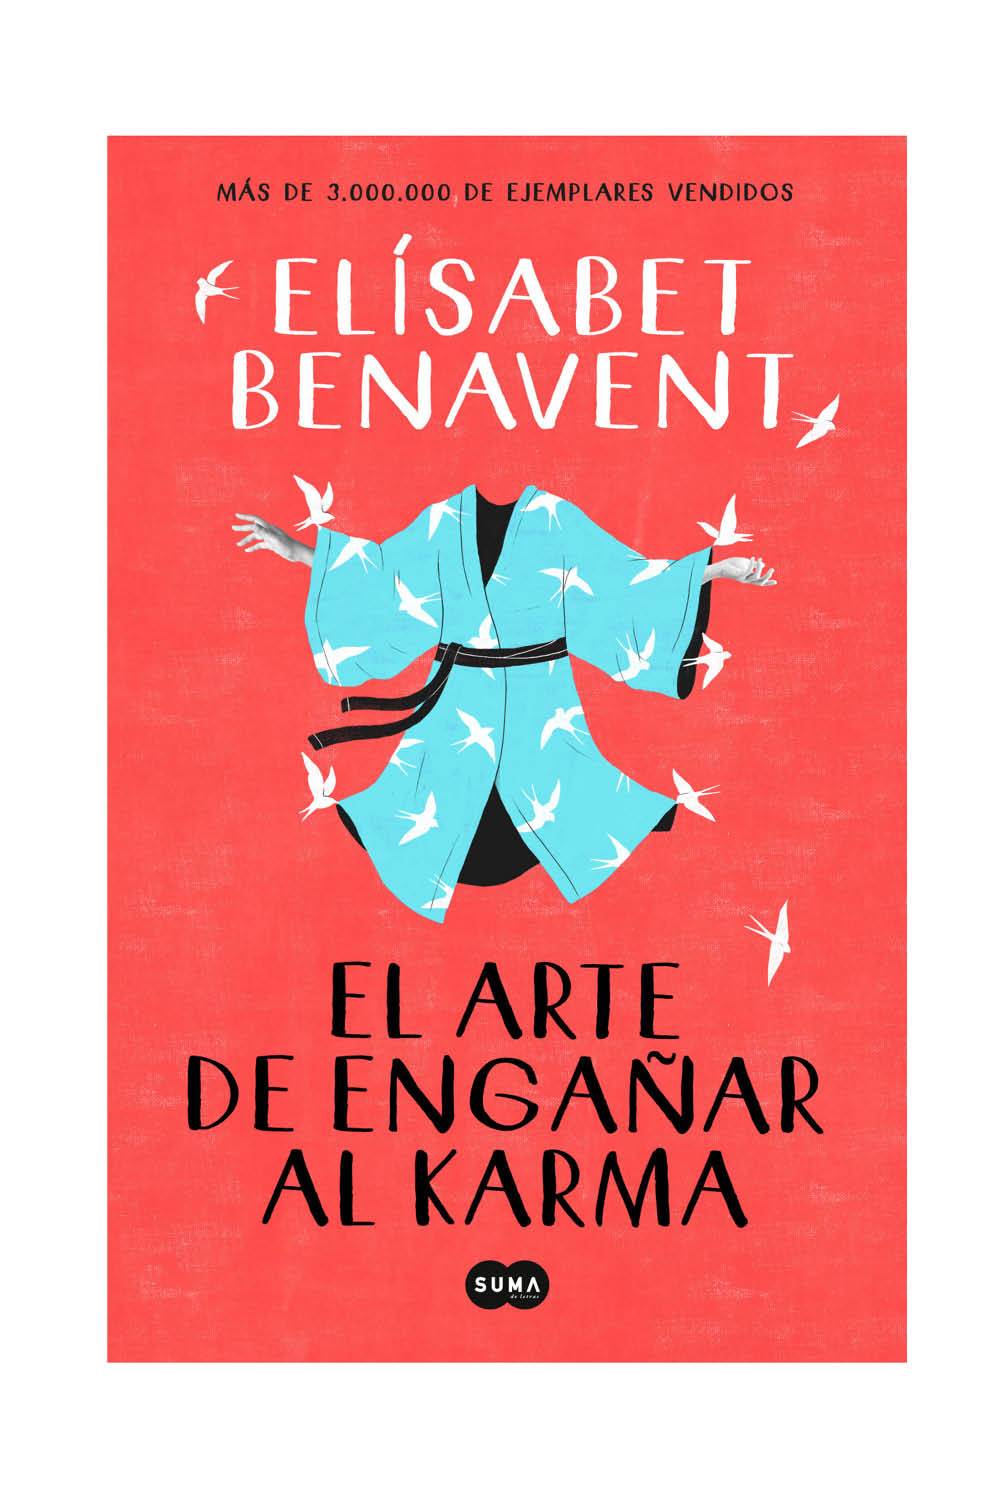 libros recomendados 2021 sant jordi dia del libro elisabet benavent el arte de enganar al karma